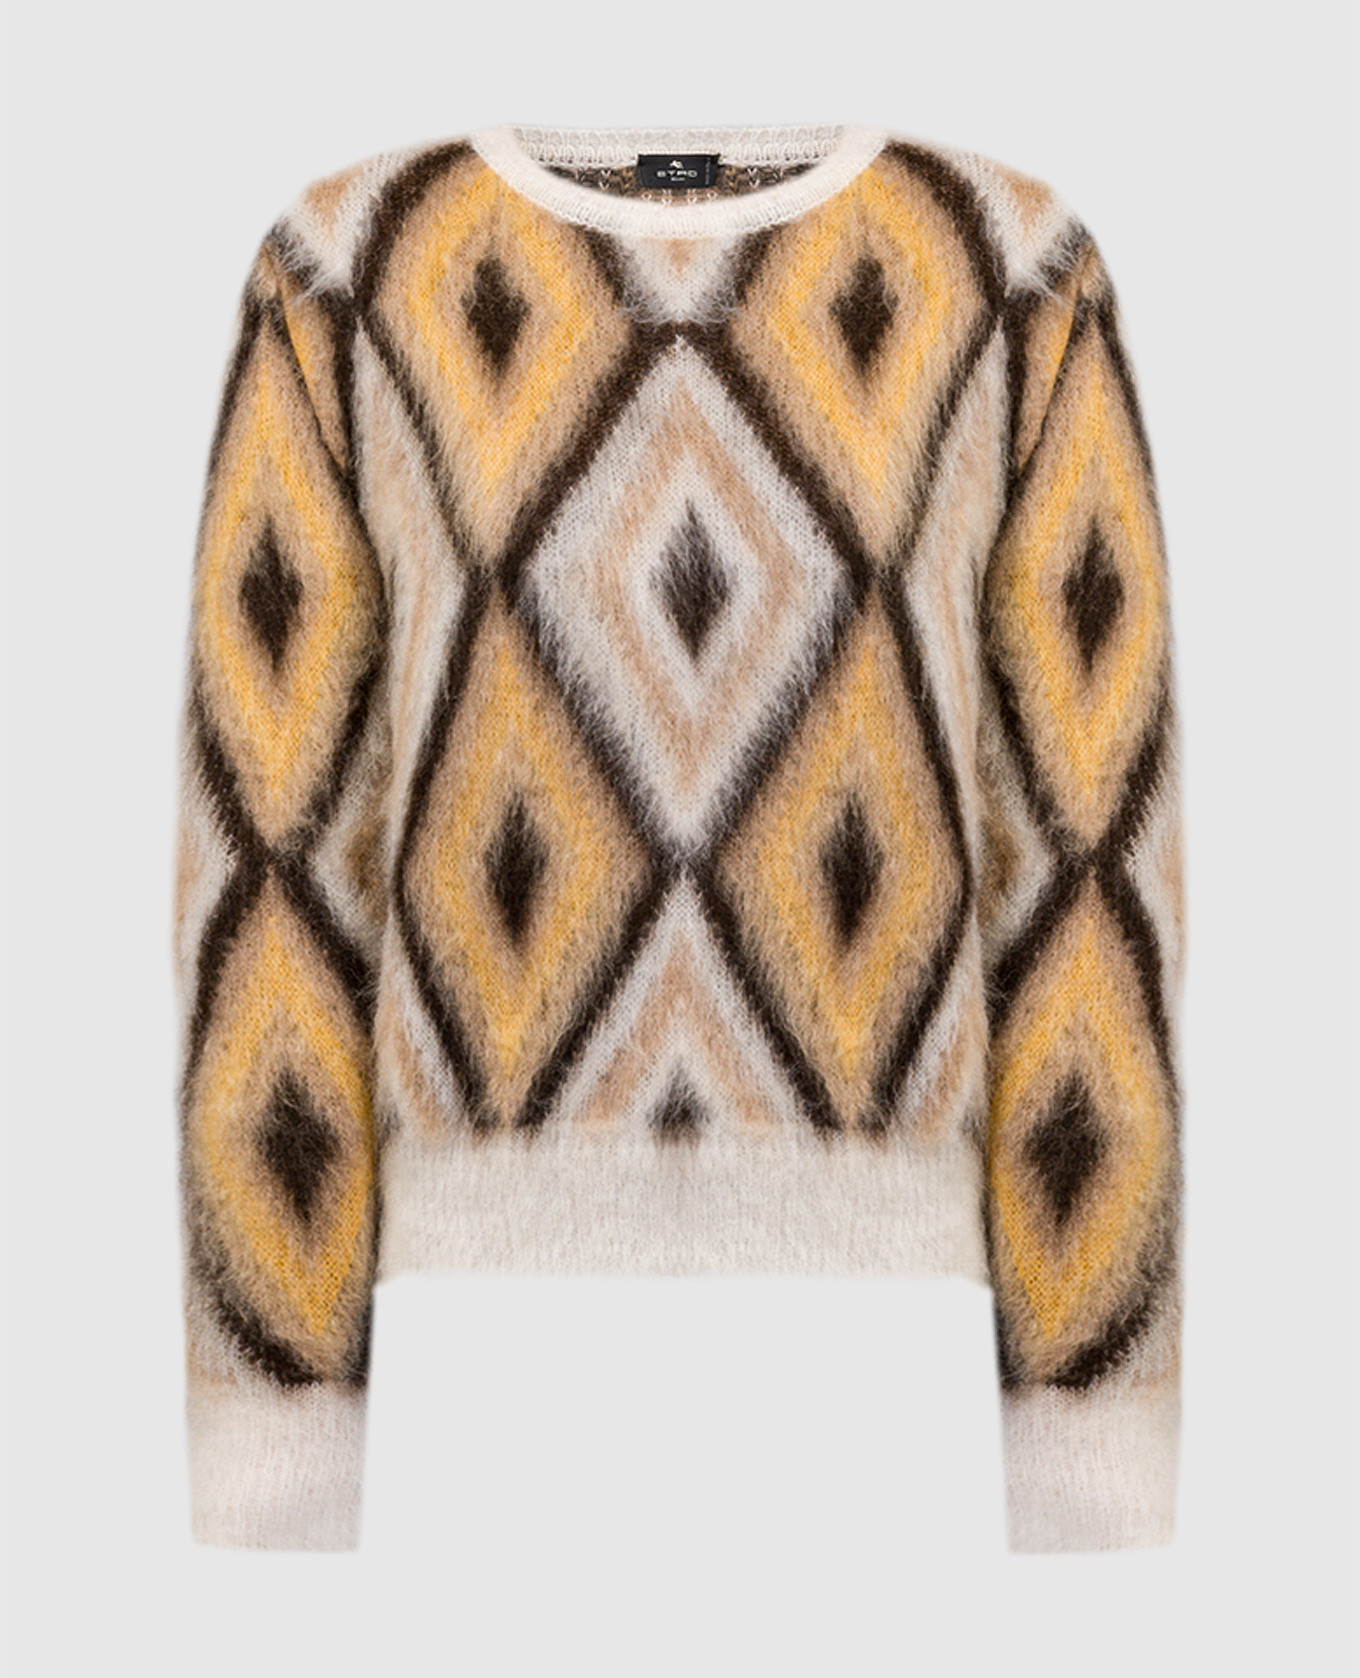 Beige sweater in a geometric pattern